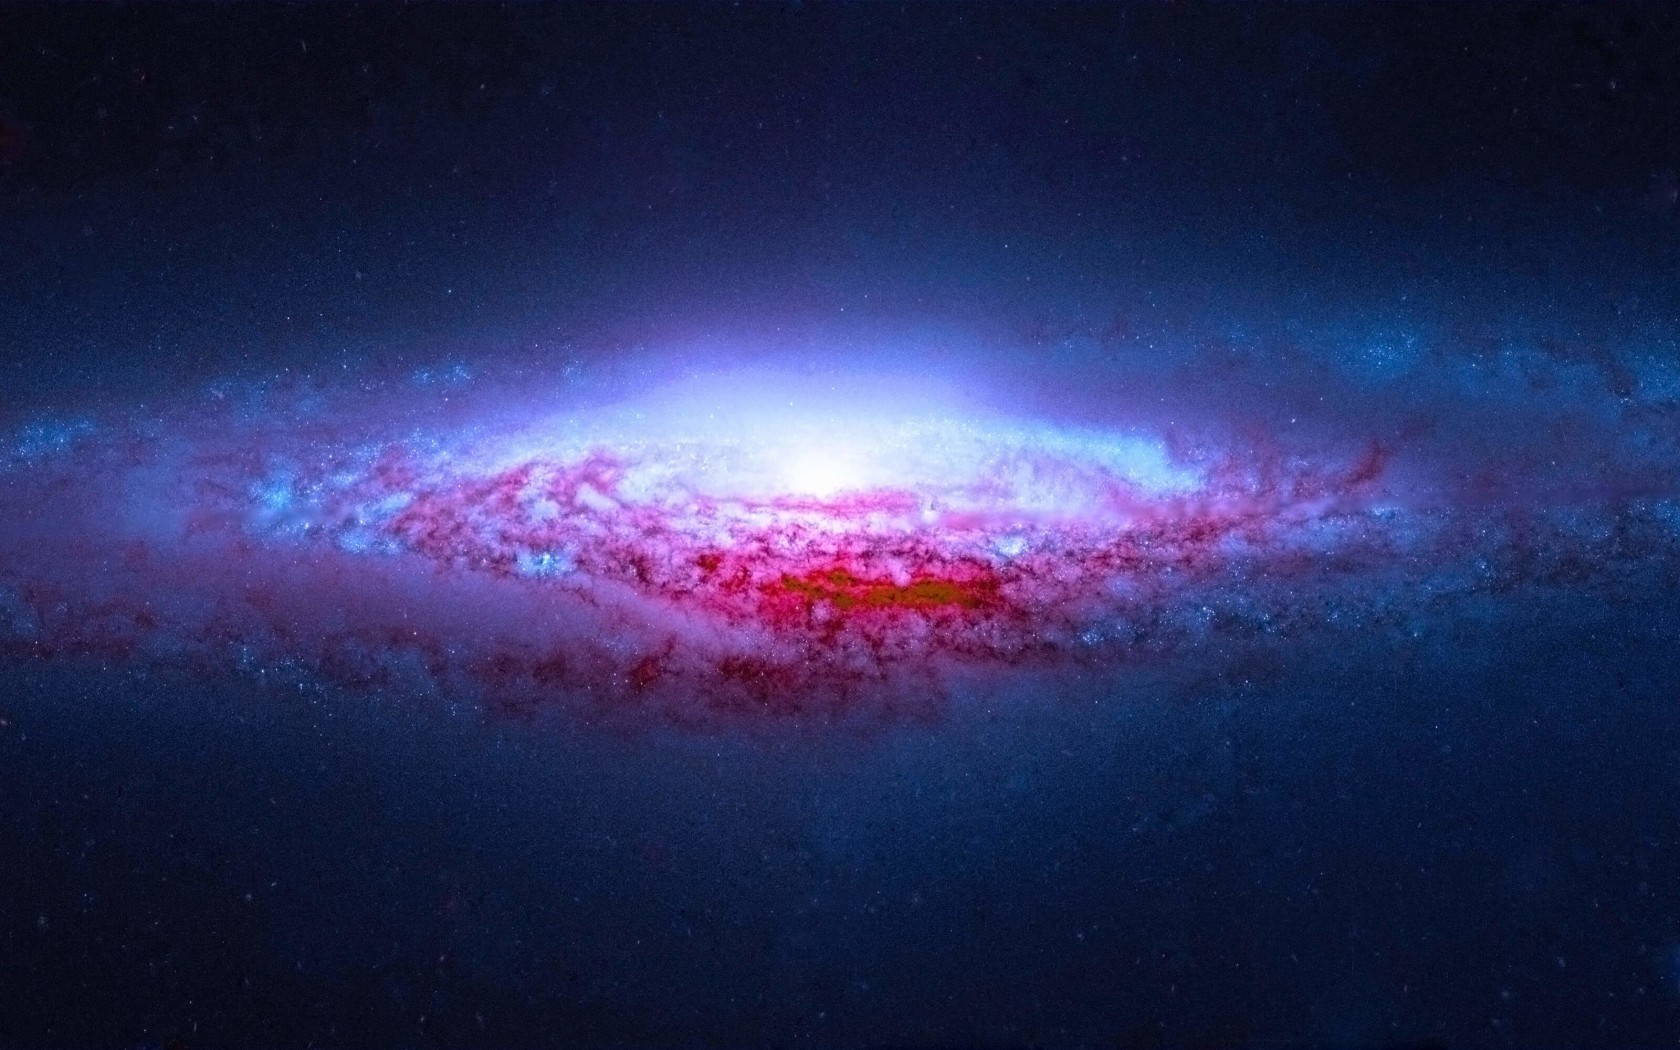 NGC 2683 Spiral Galaxy Wallpaper for Desktop 1680x1050